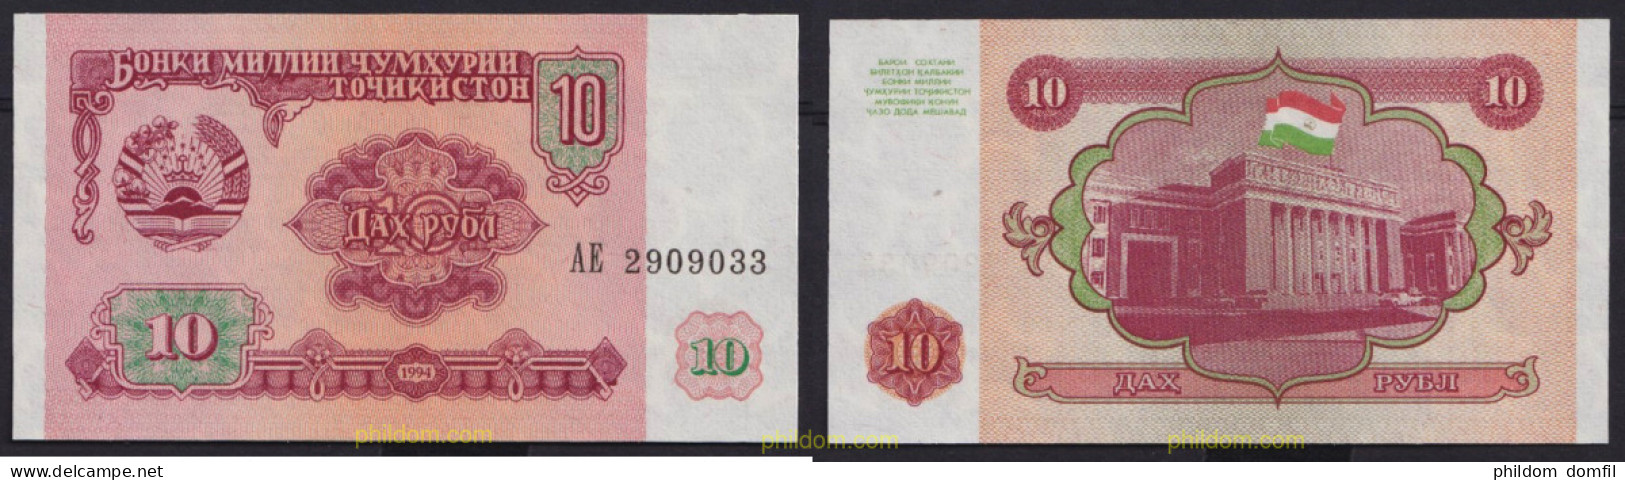 5511 TAYIKISTAN 1994 TAJIKISTAN 10 DIRHAM 1994 - Tadzjikistan